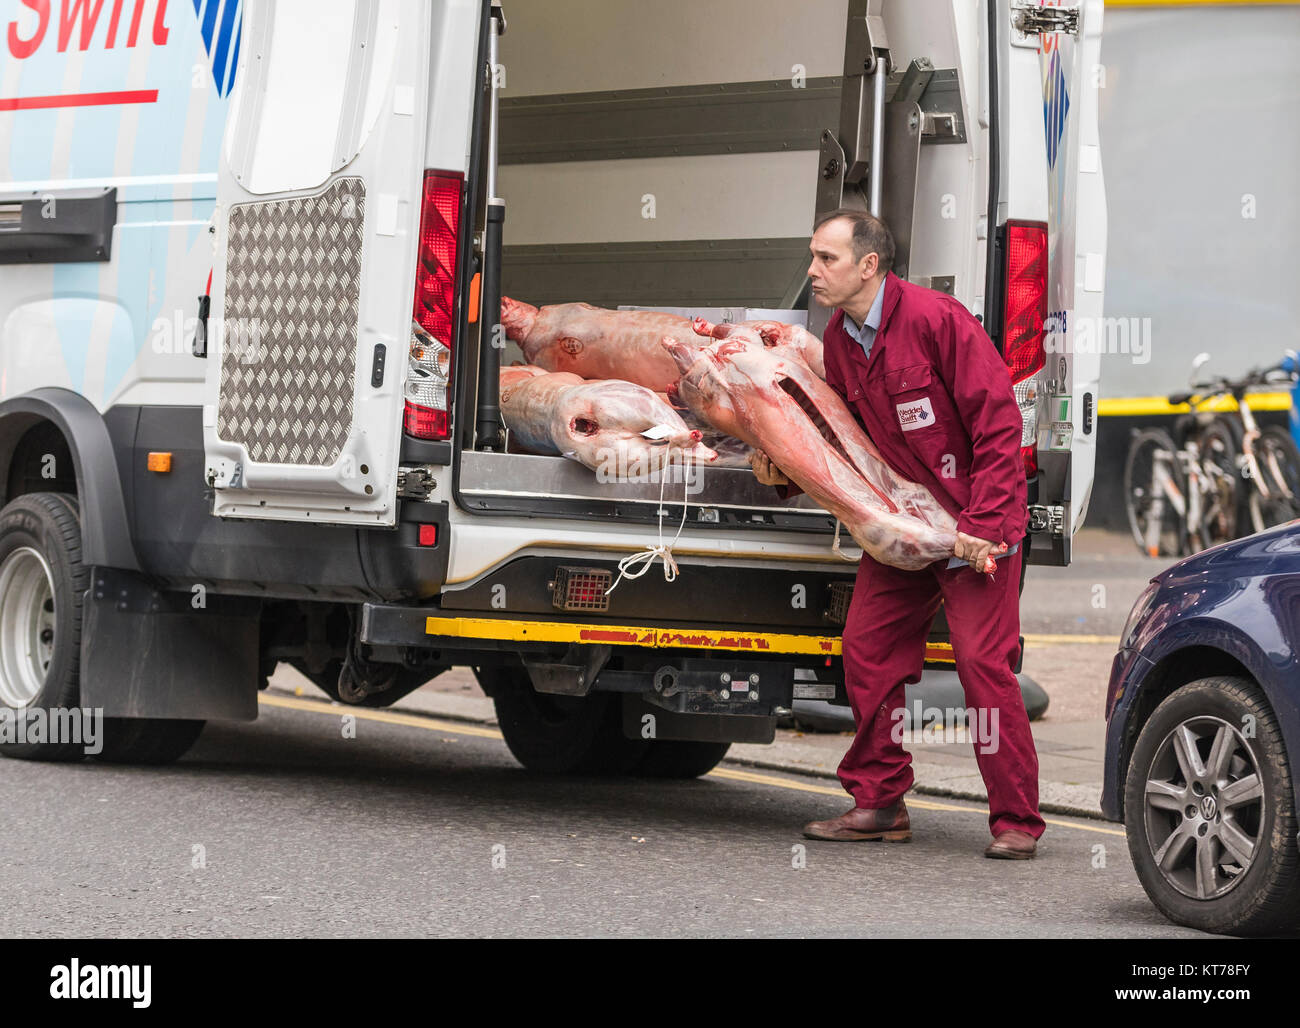 Les carcasses d'animaux morts de l'homme à partir d'un van pour une boutique de bouchers en Angleterre, Royaume-Uni. Livraison de viande. La livraison de la viande. Banque D'Images